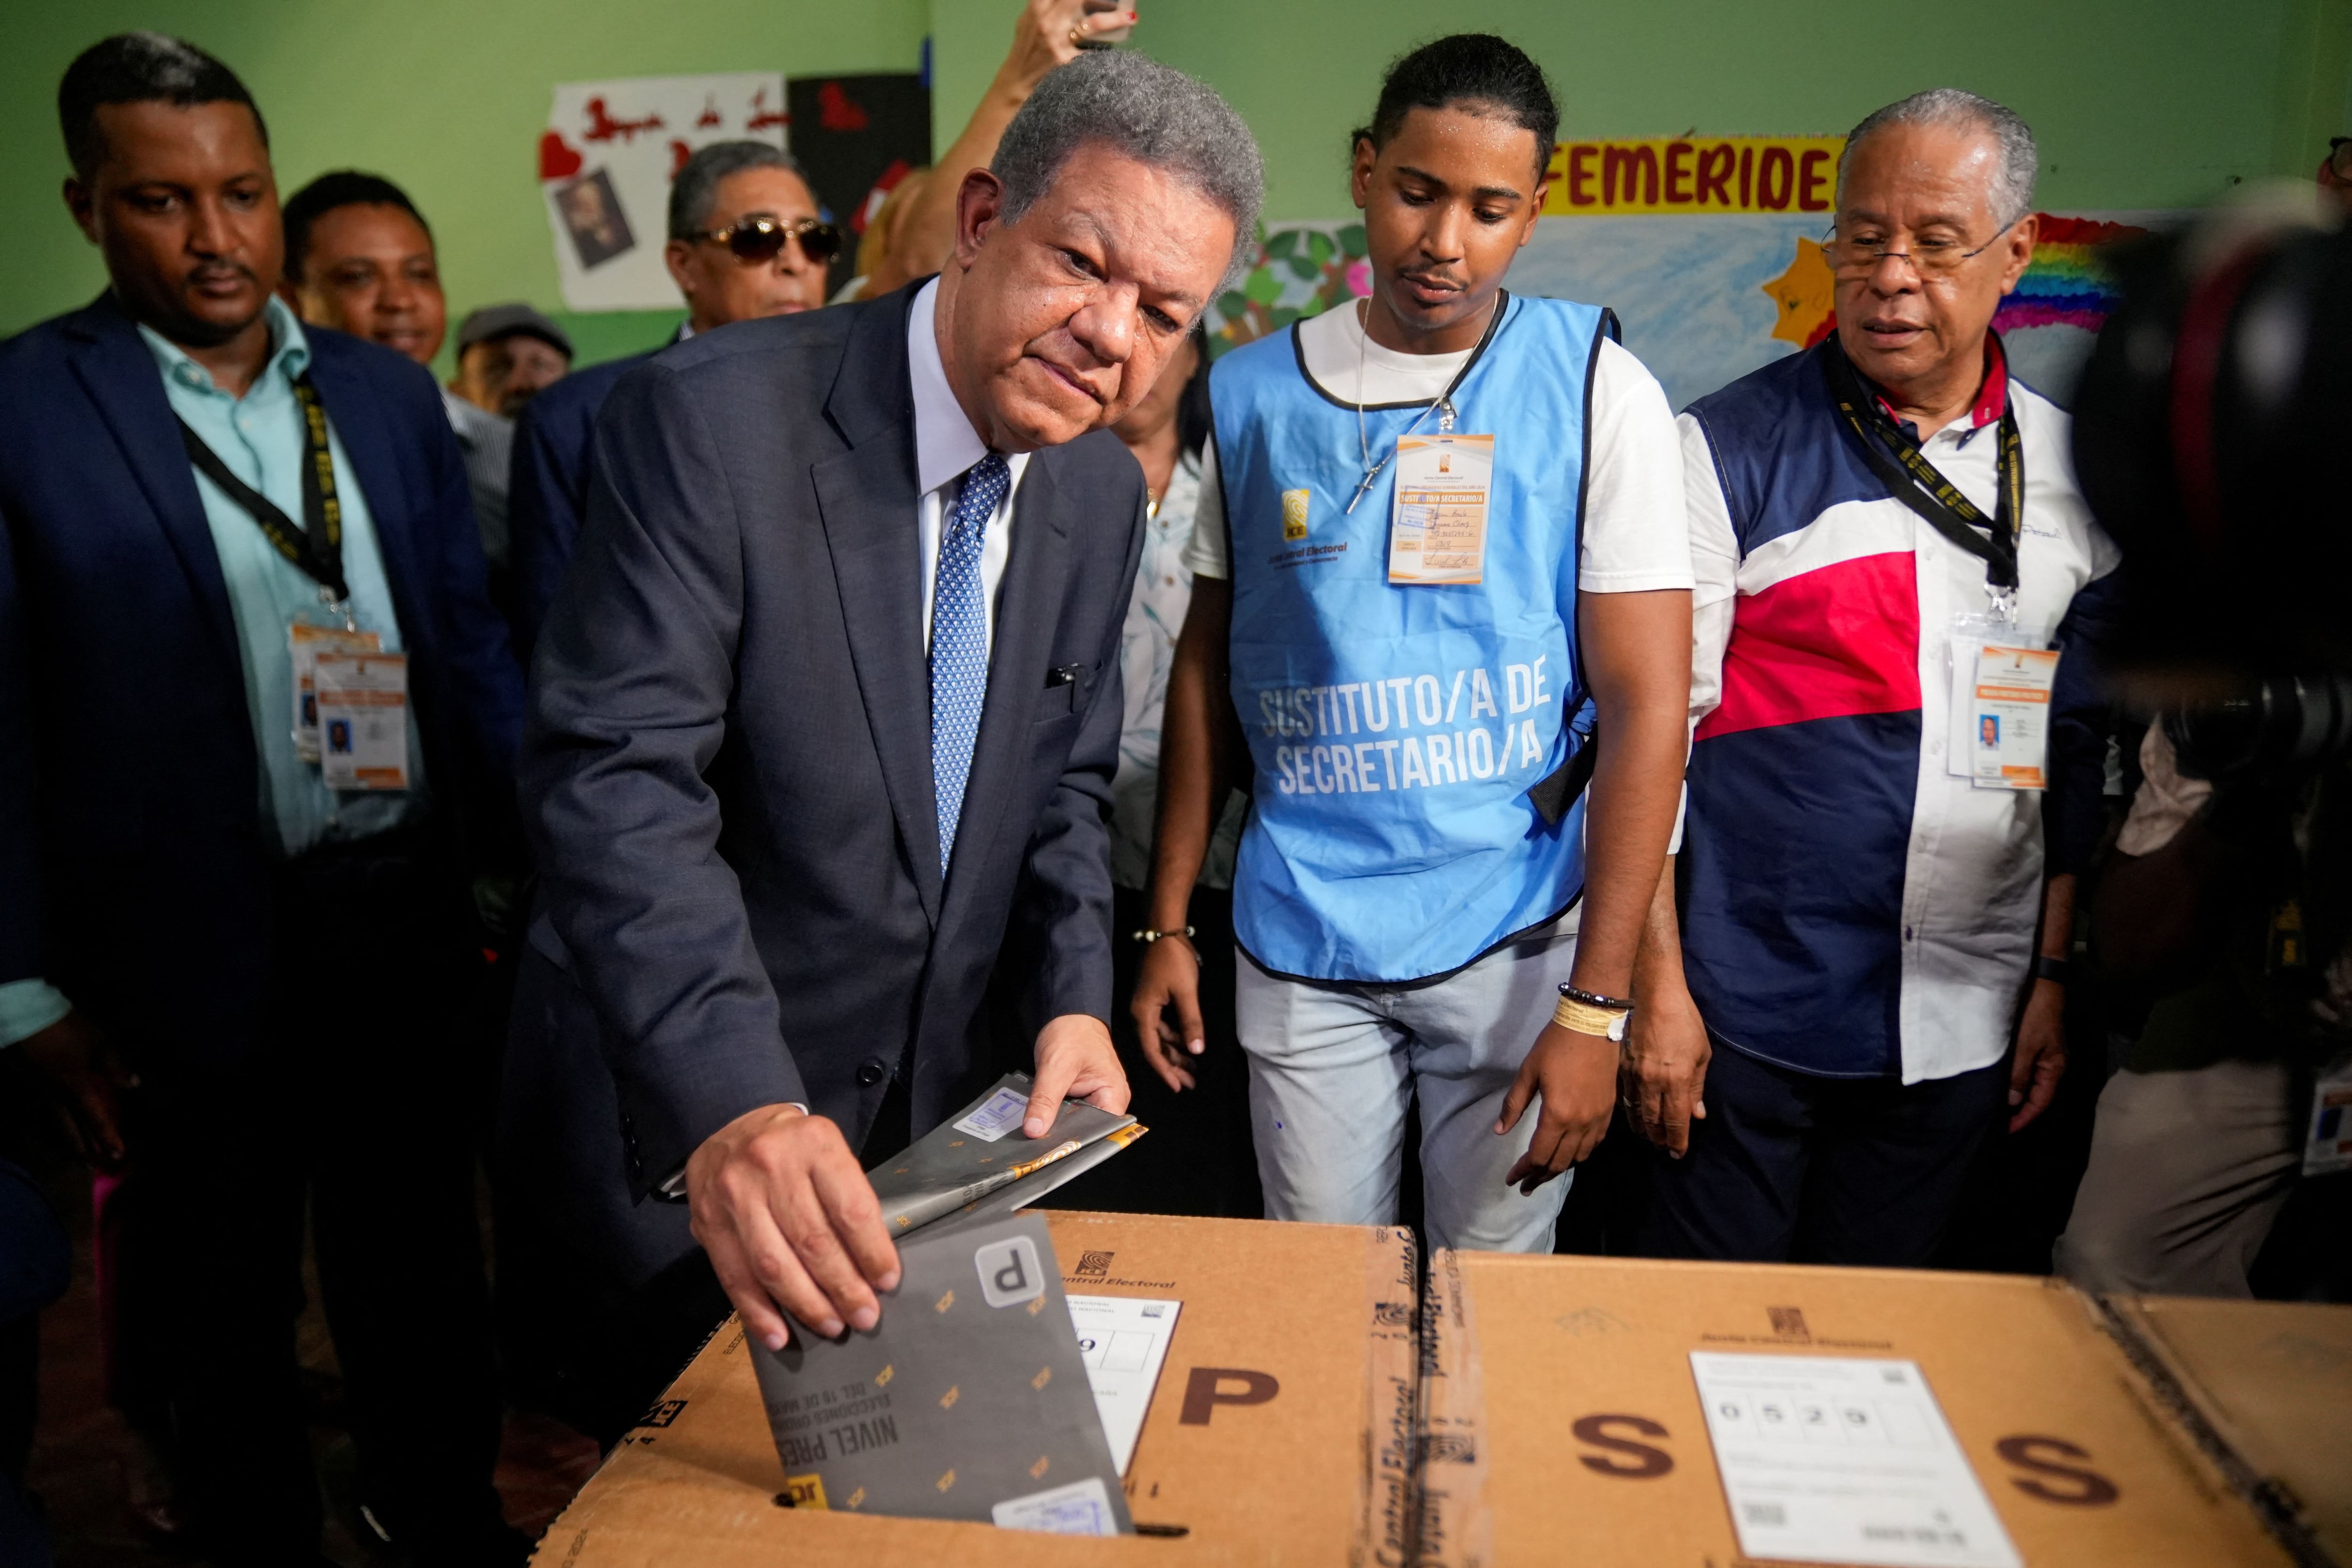 El candidato presidencial del partido Fuerza Popular Leonel Fernández vota el día de las elecciones presidenciales en Santo Domingo, República Dominicana, de 19 de mayo de 2024. REUTERS/Fran Afonso